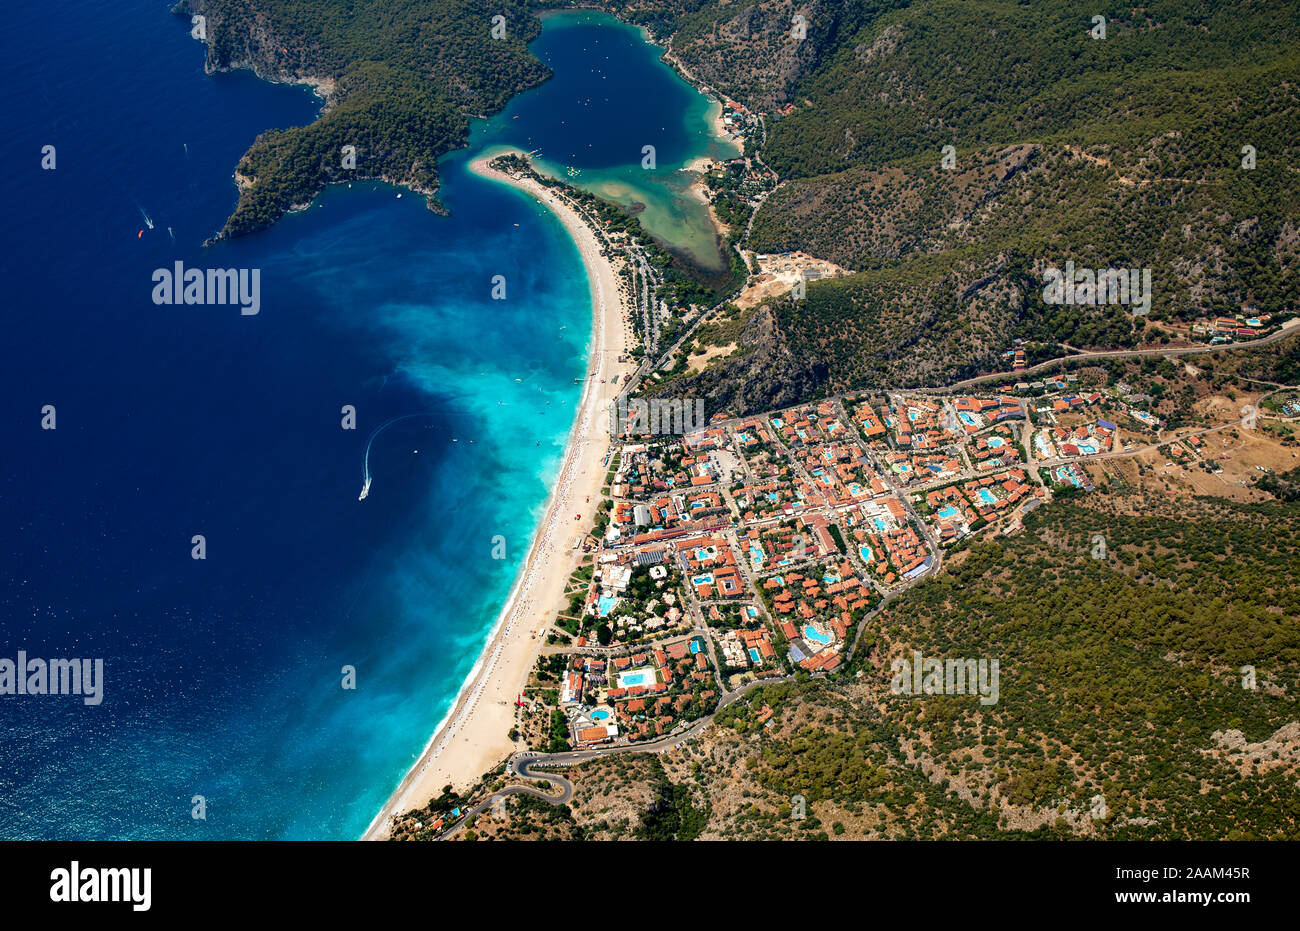 Aerial view of Oludeniz, Turkey Stock Photo